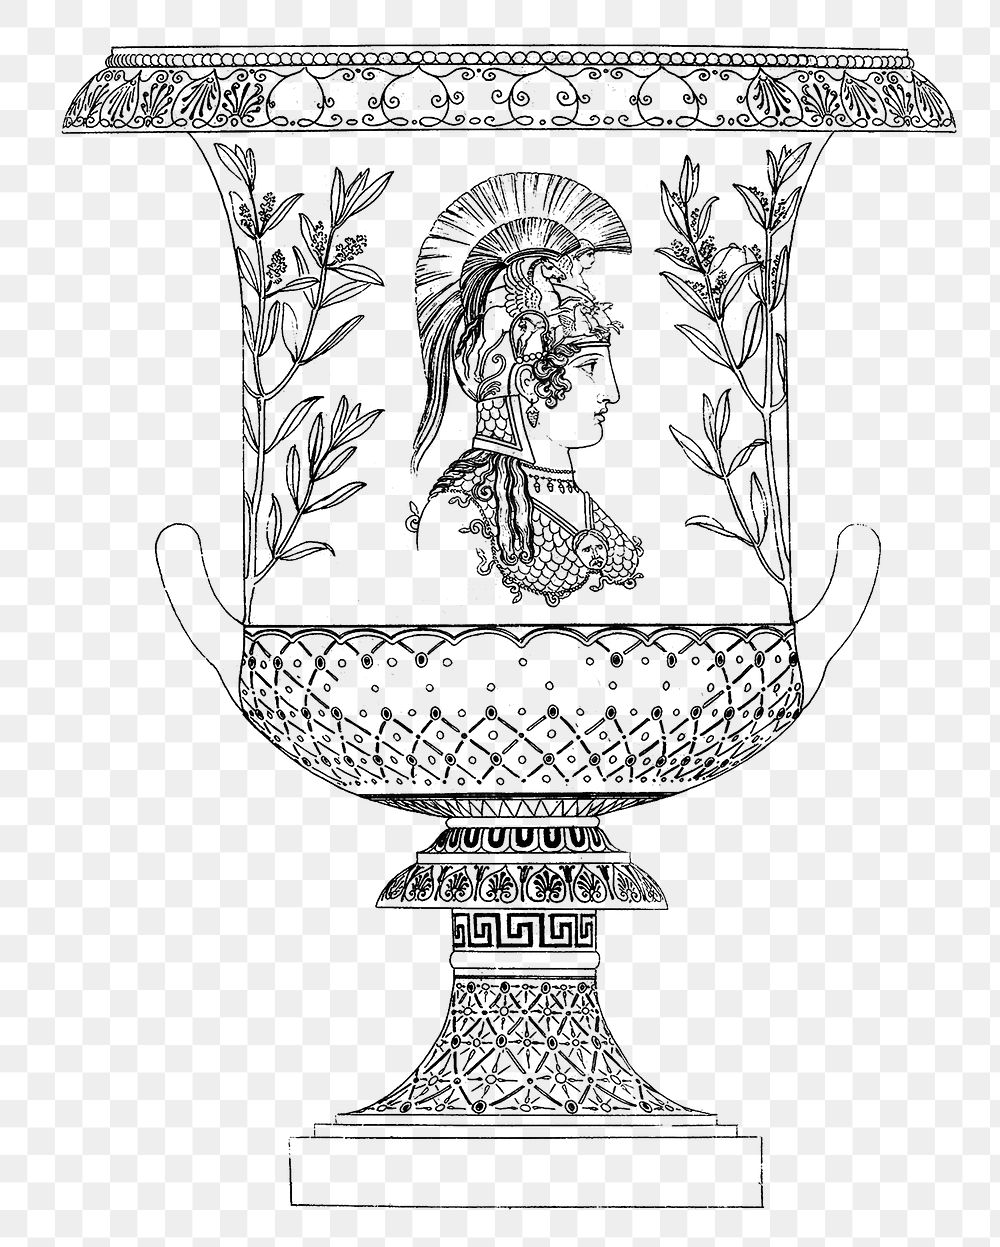 Greek vase png vintage illustration on transparent background